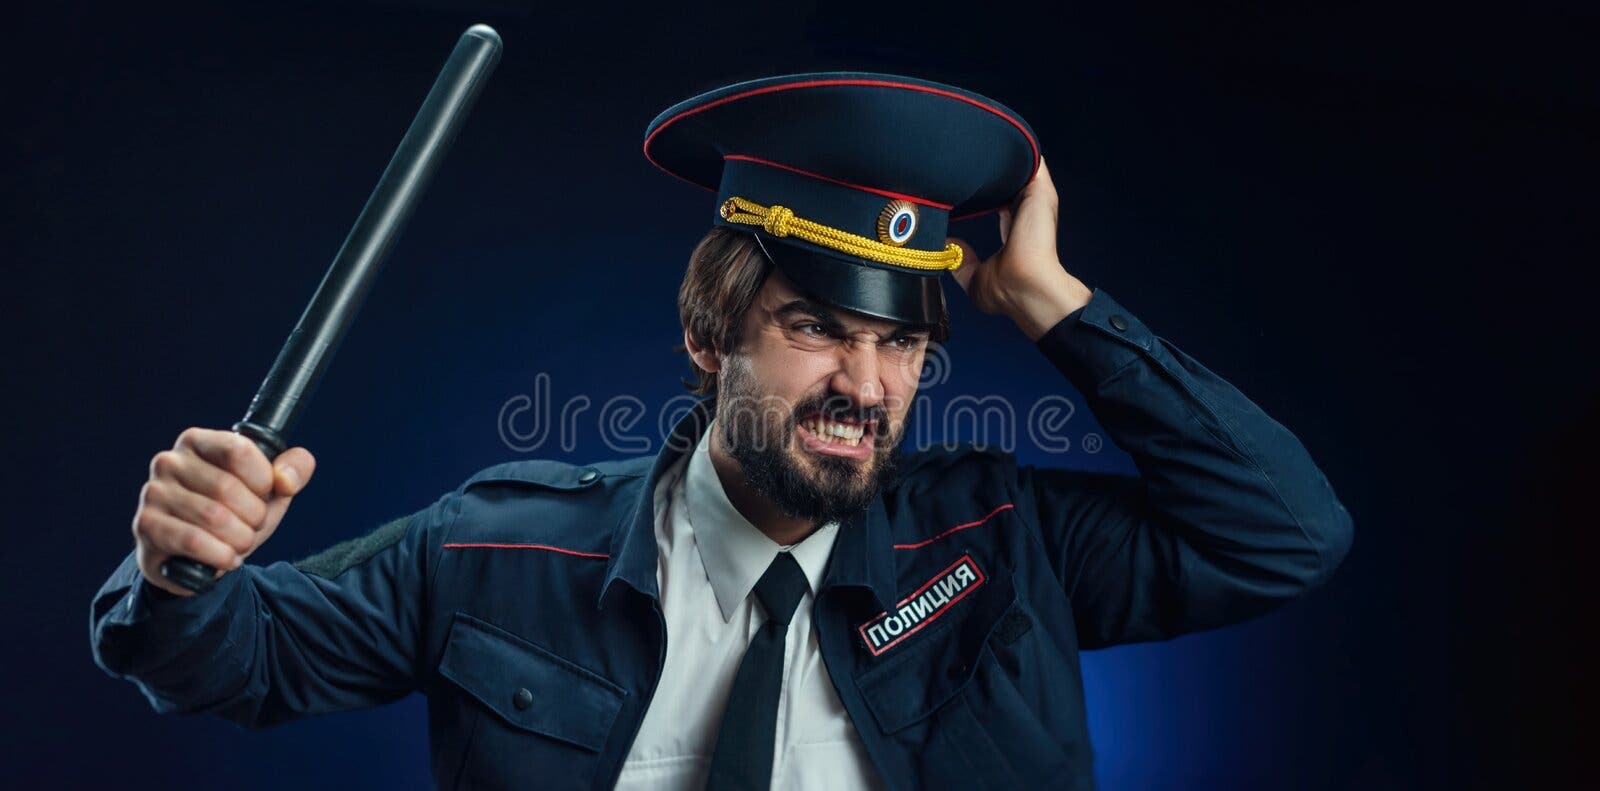 Um Cara De Uniforme Policial Com Uma Espingarda De Atirador